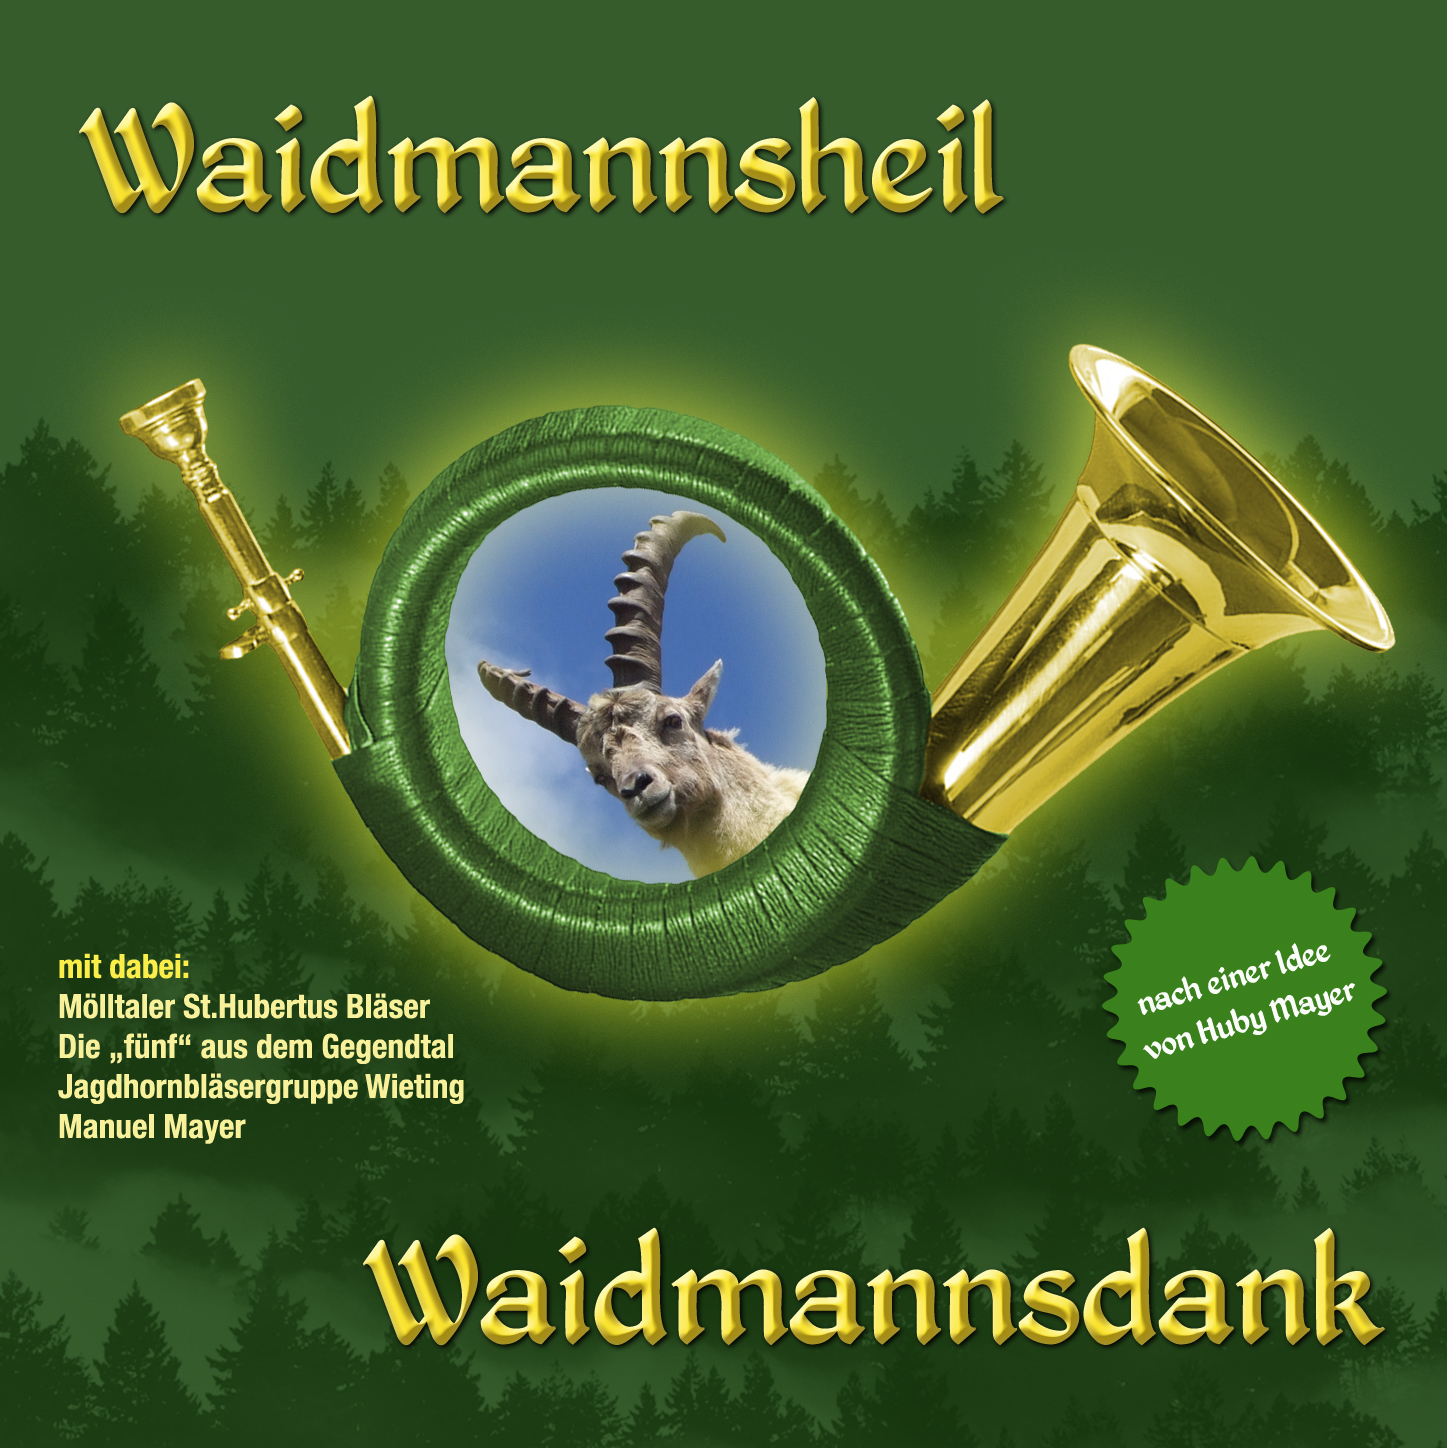 33. Waidmannsheil Waidmannsdank